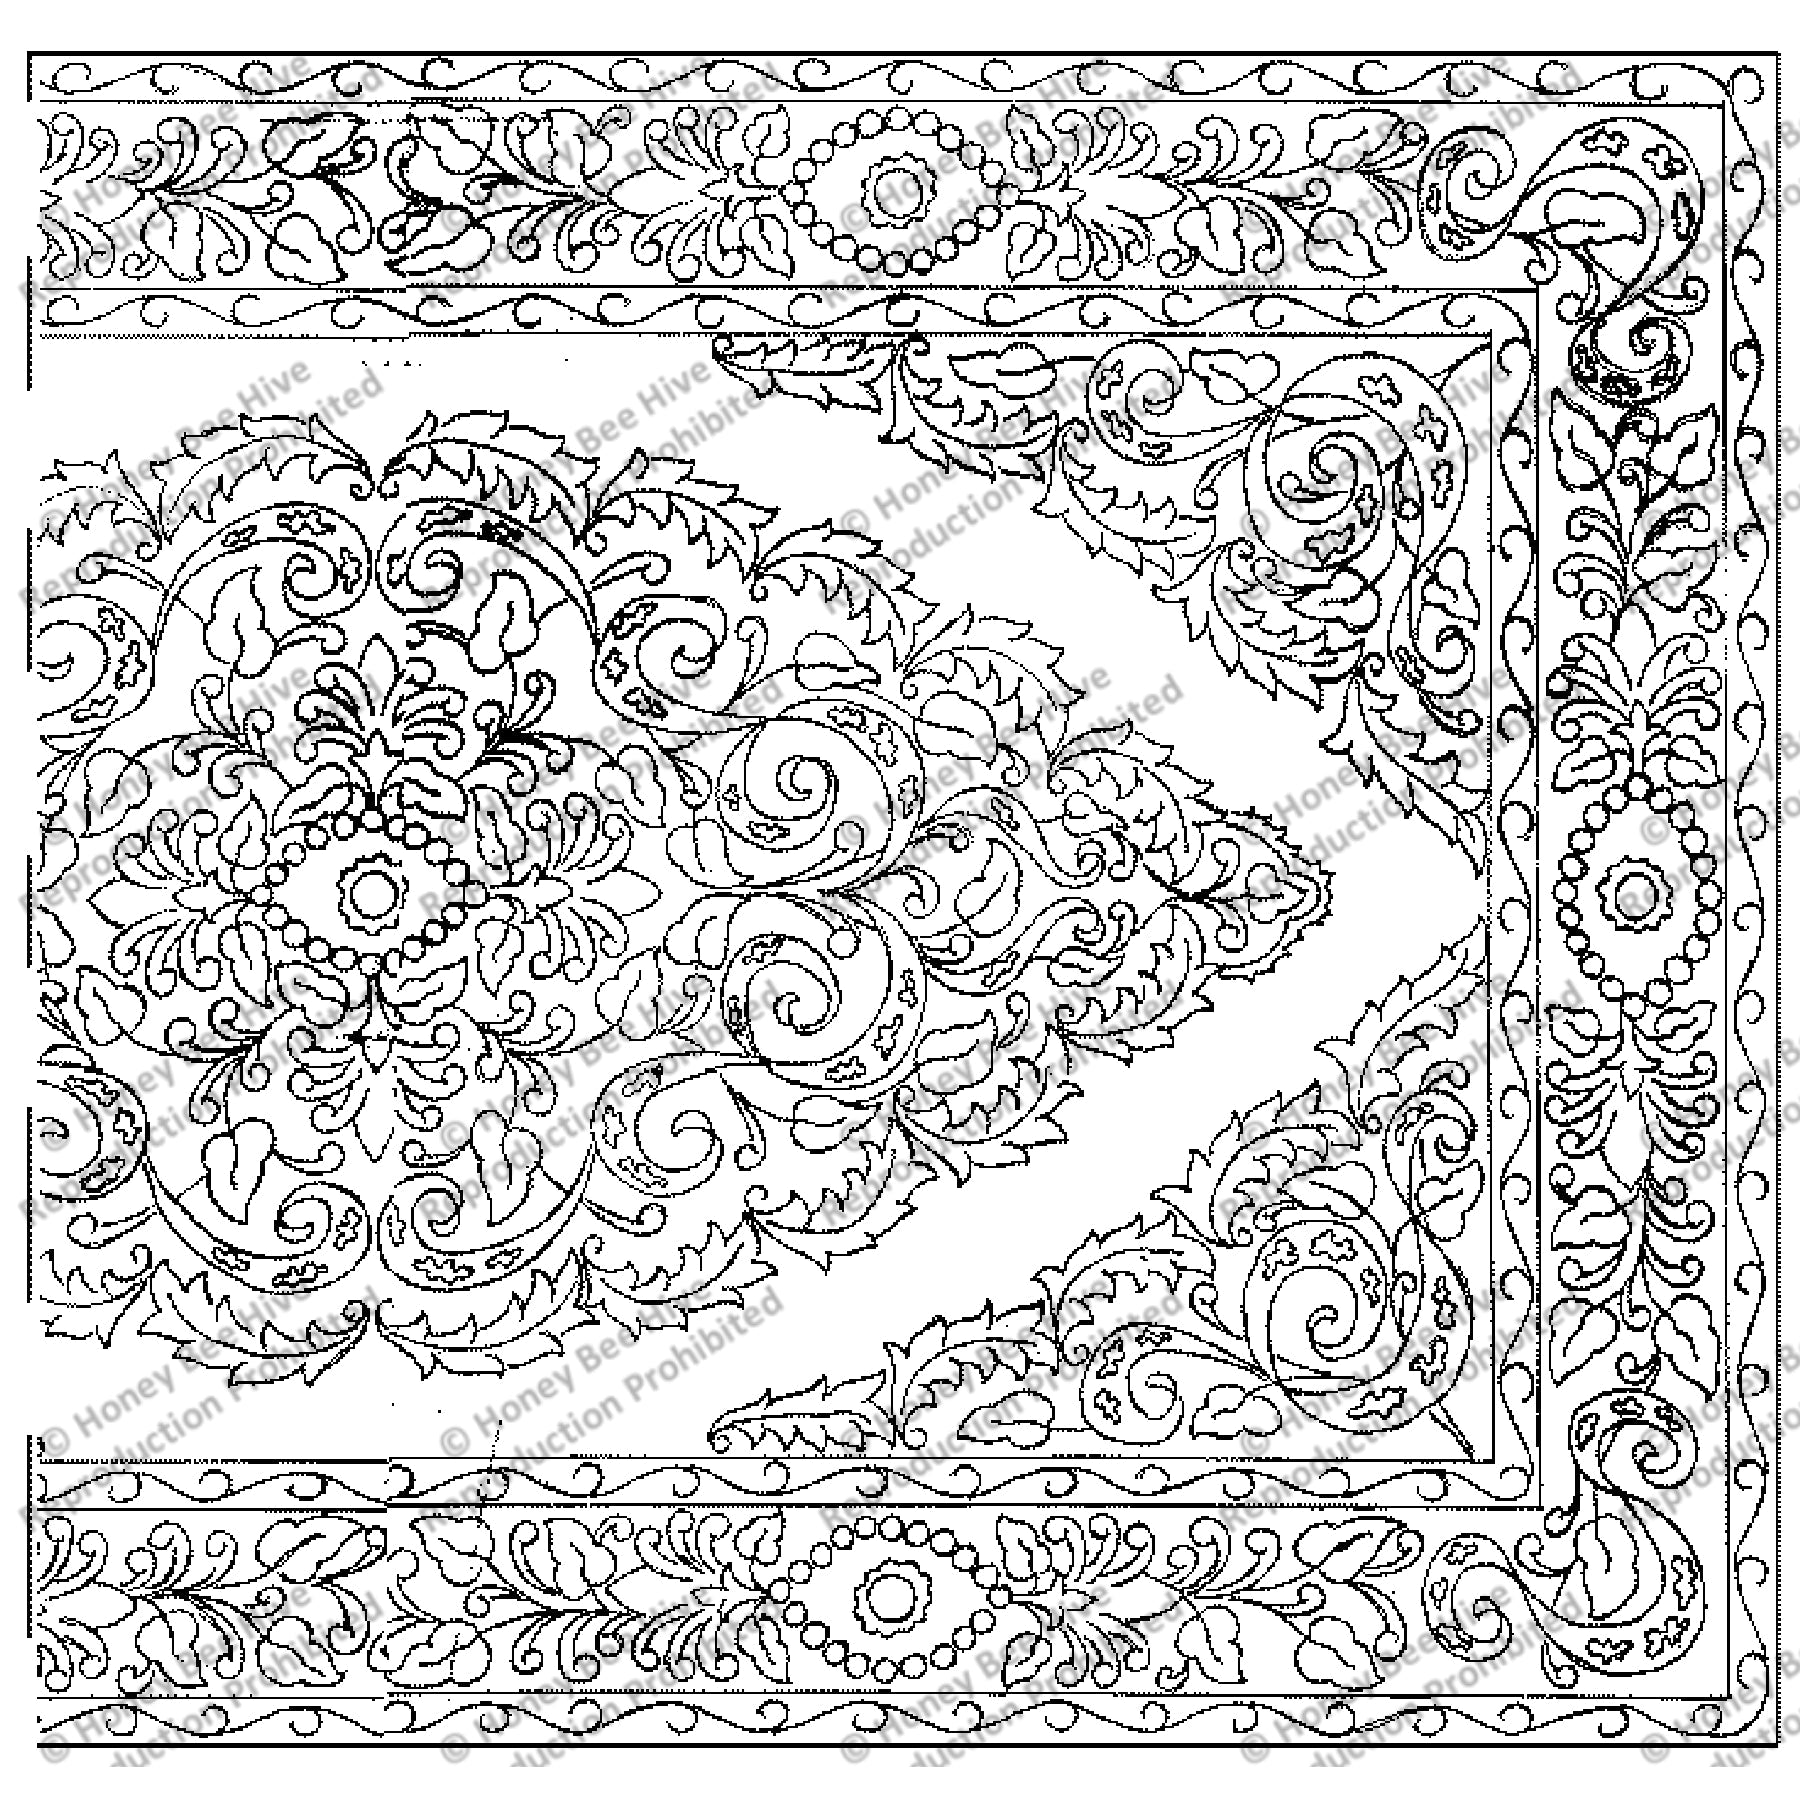 Kashi, rug hooking pattern